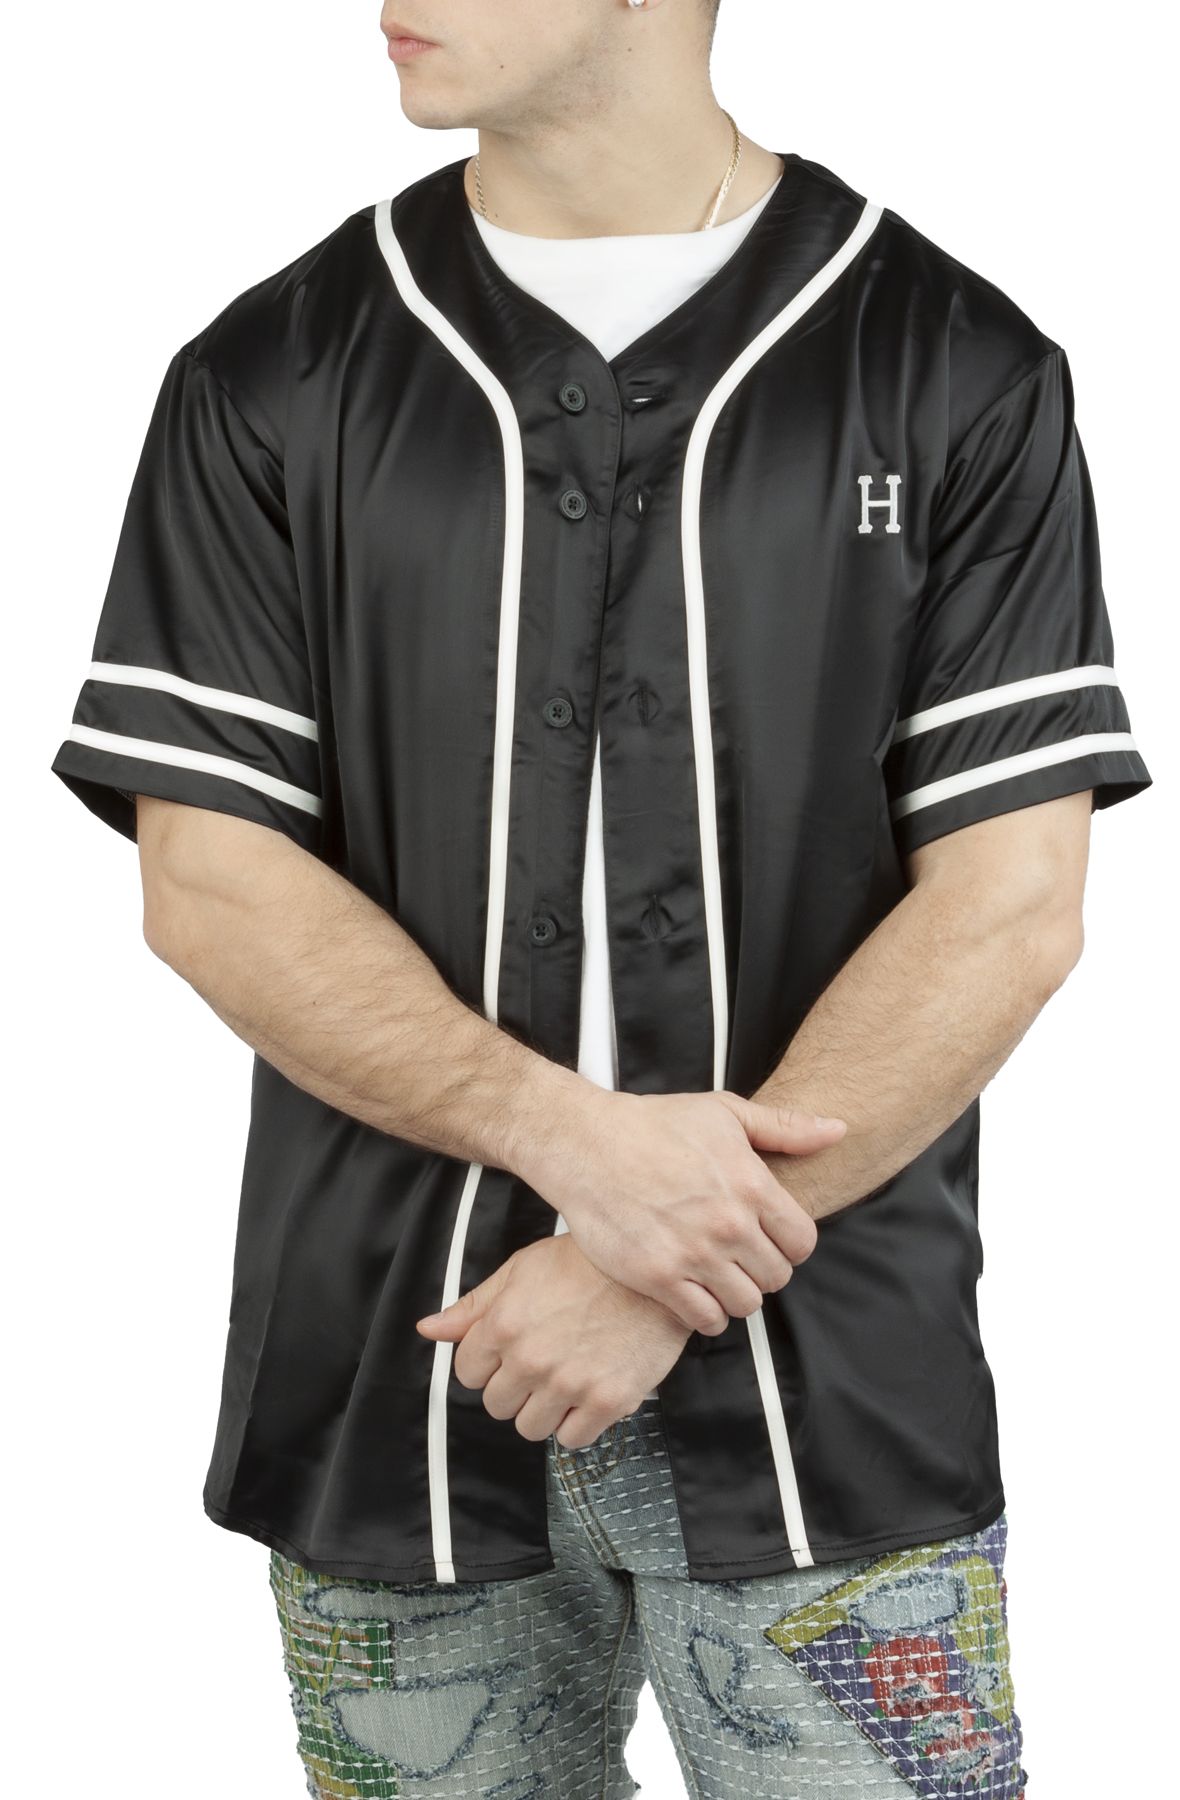 Champion Womens Baseball Jersey Button Front Shirt Dress Size